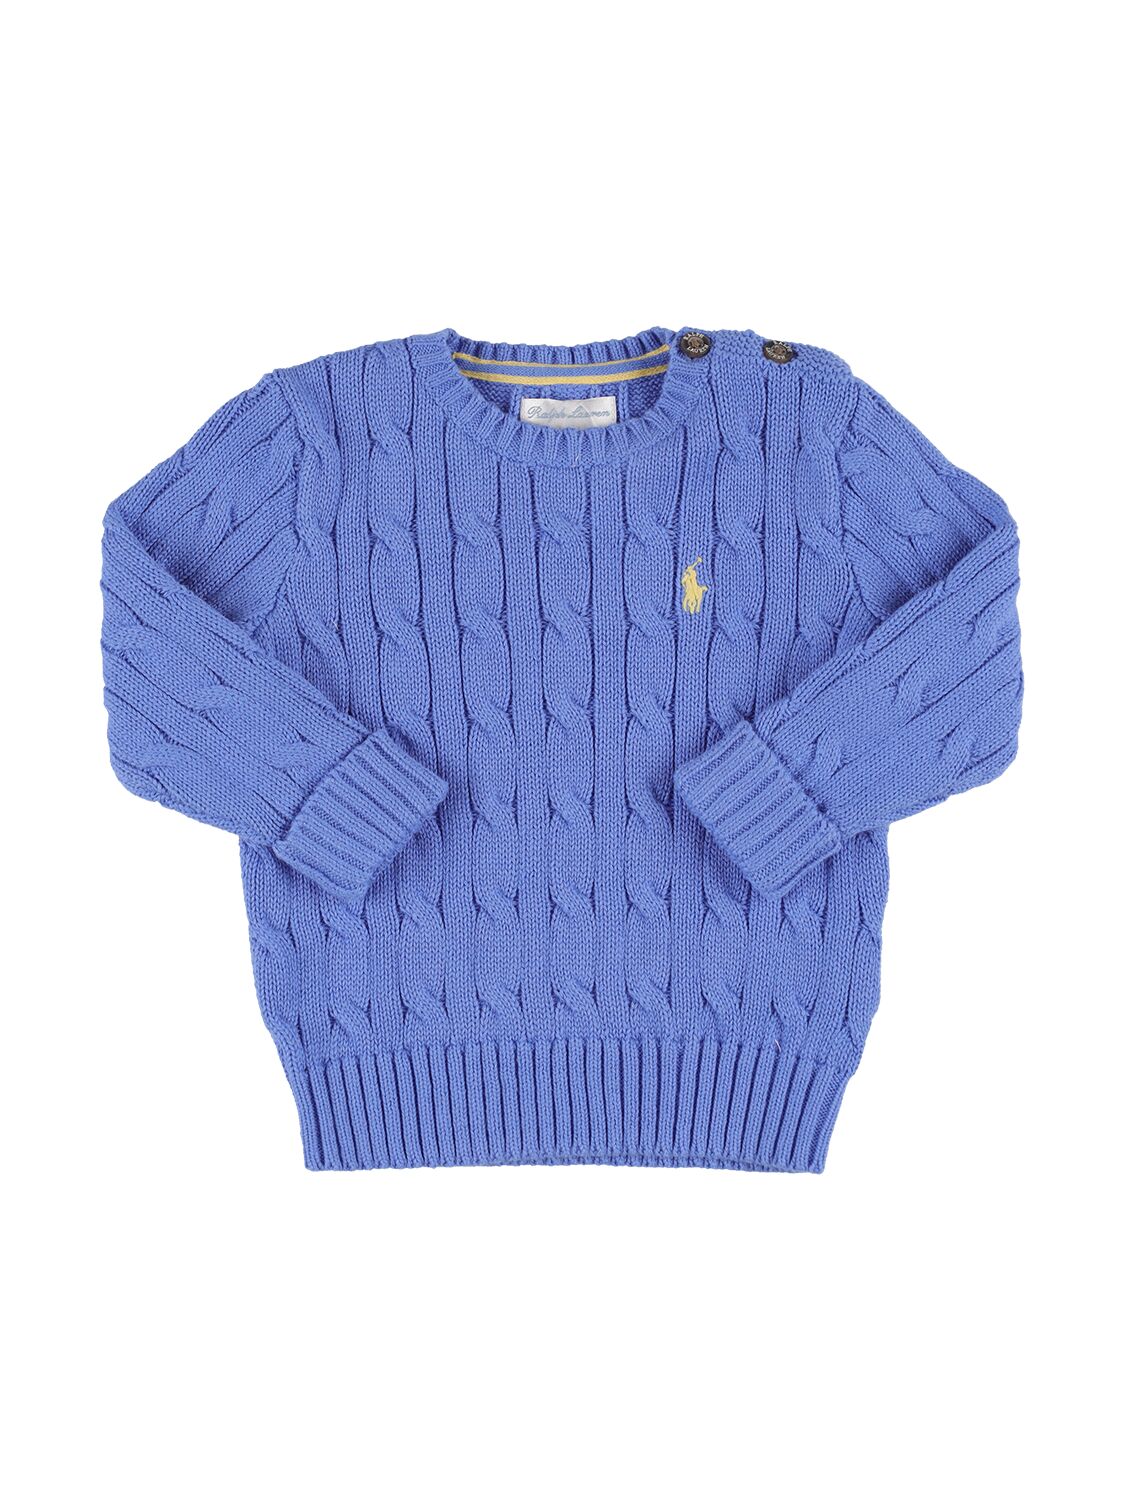 Ralph Lauren Babies' Logo Cotton Cable Knit Sweater